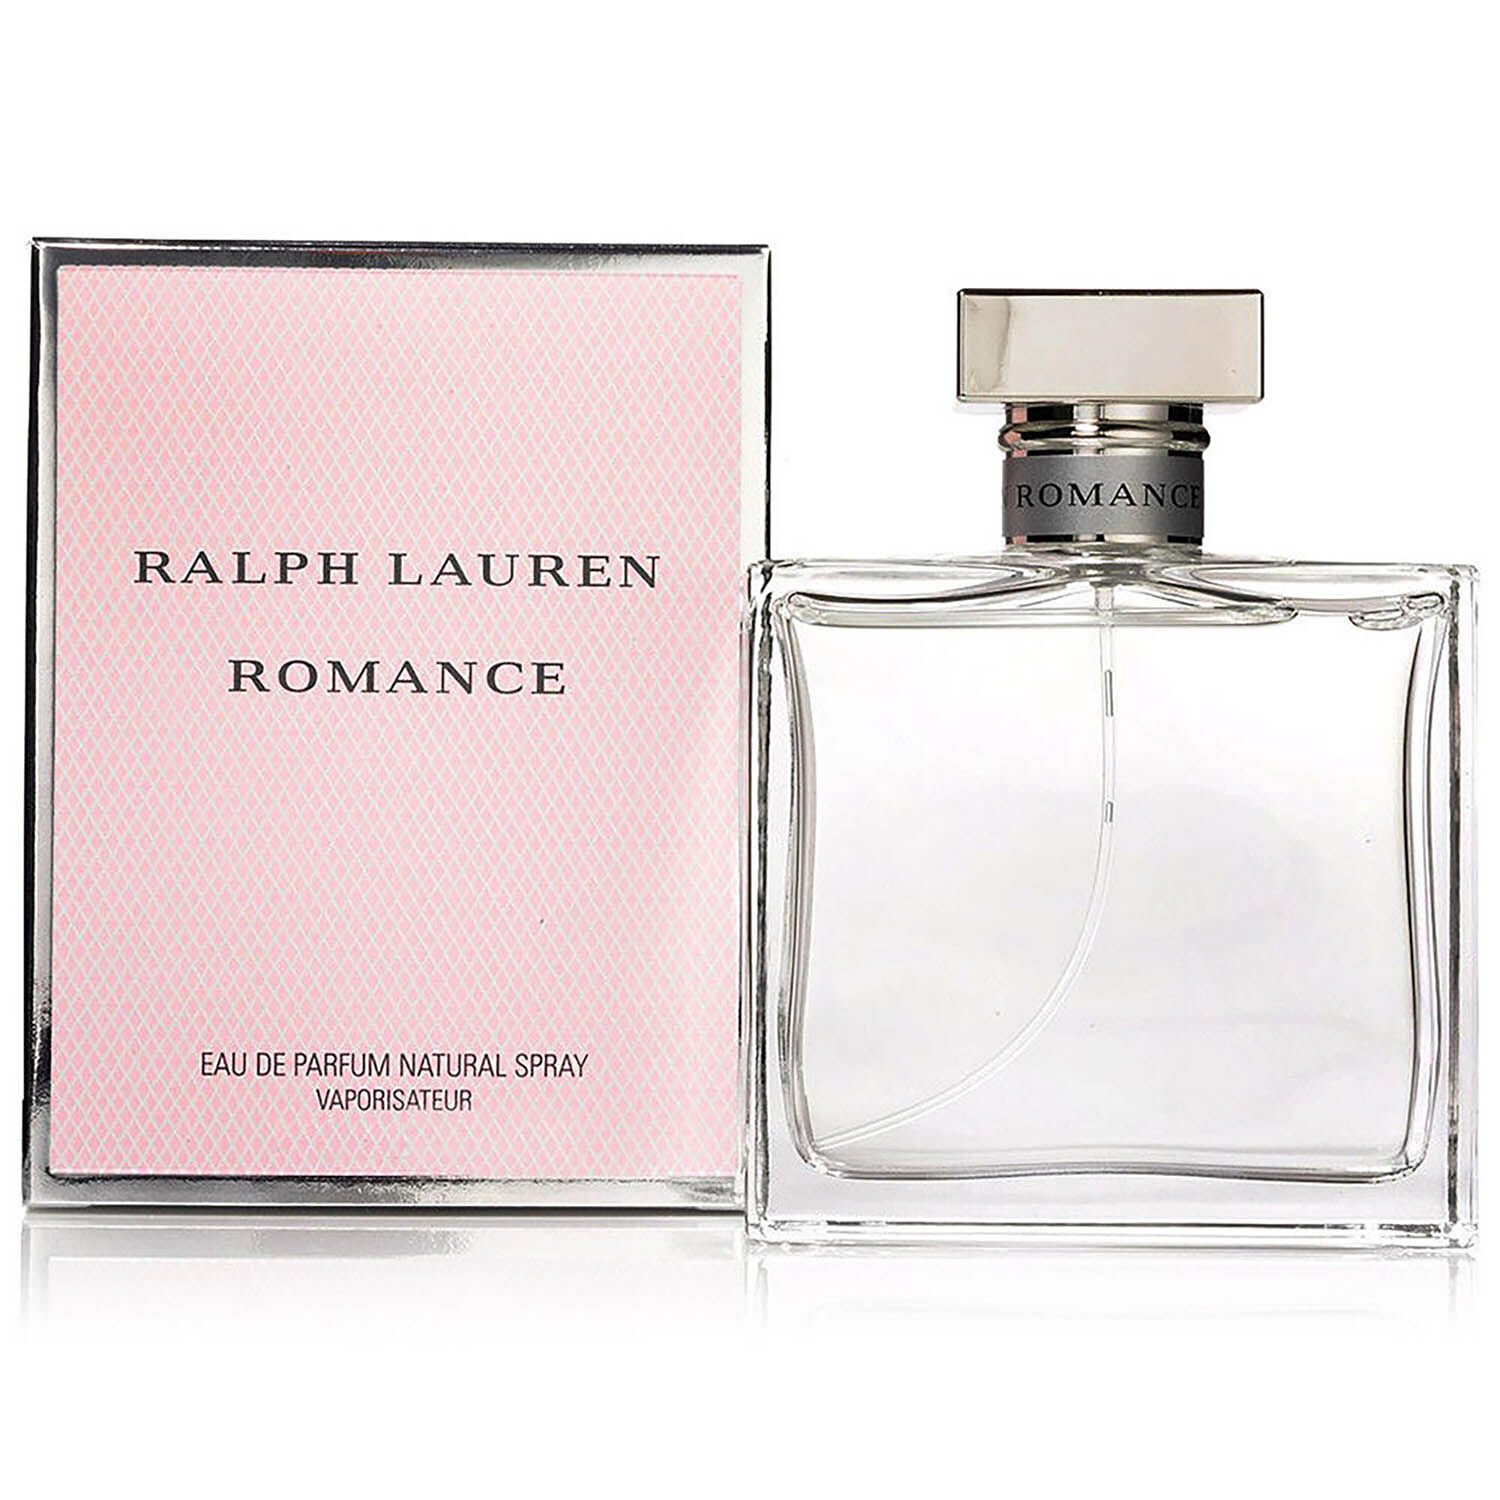 parfum romance